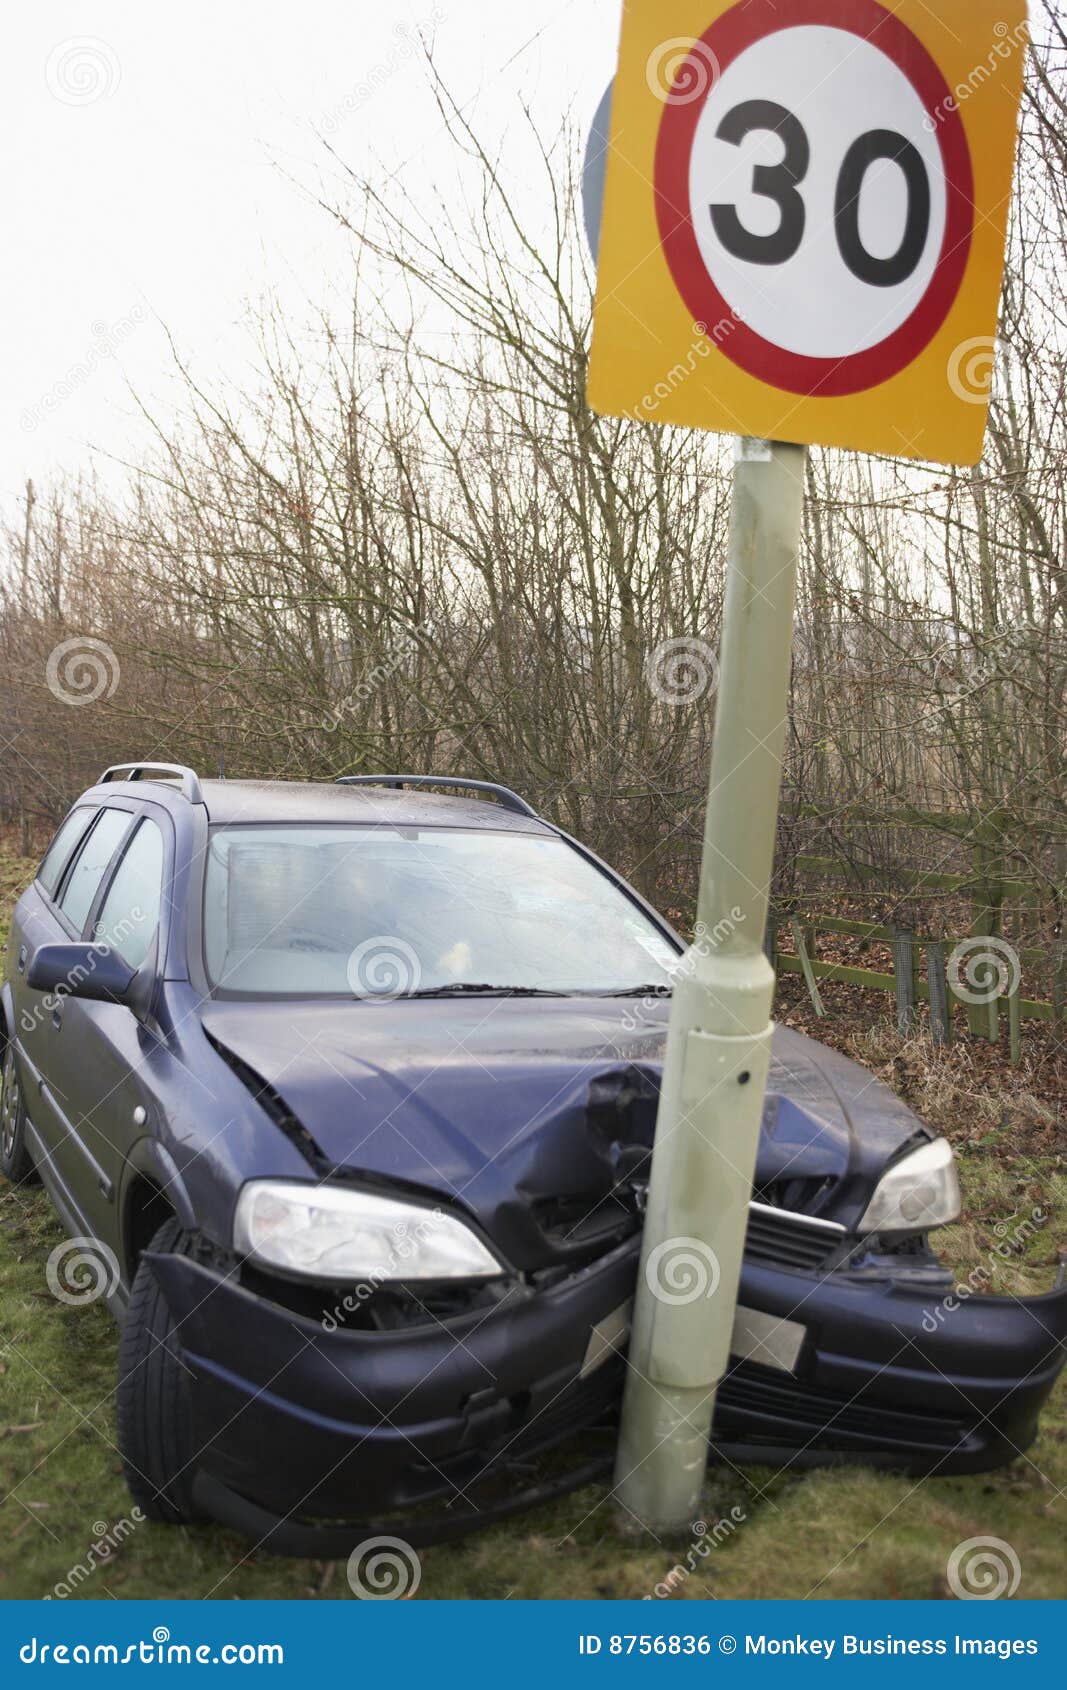 Сбитый дорожный знак. Машина врезалась в знак. Автомобиль врезался в дорожный знак. Машина въехала в дорожный знак. Машина влепилась в знак.